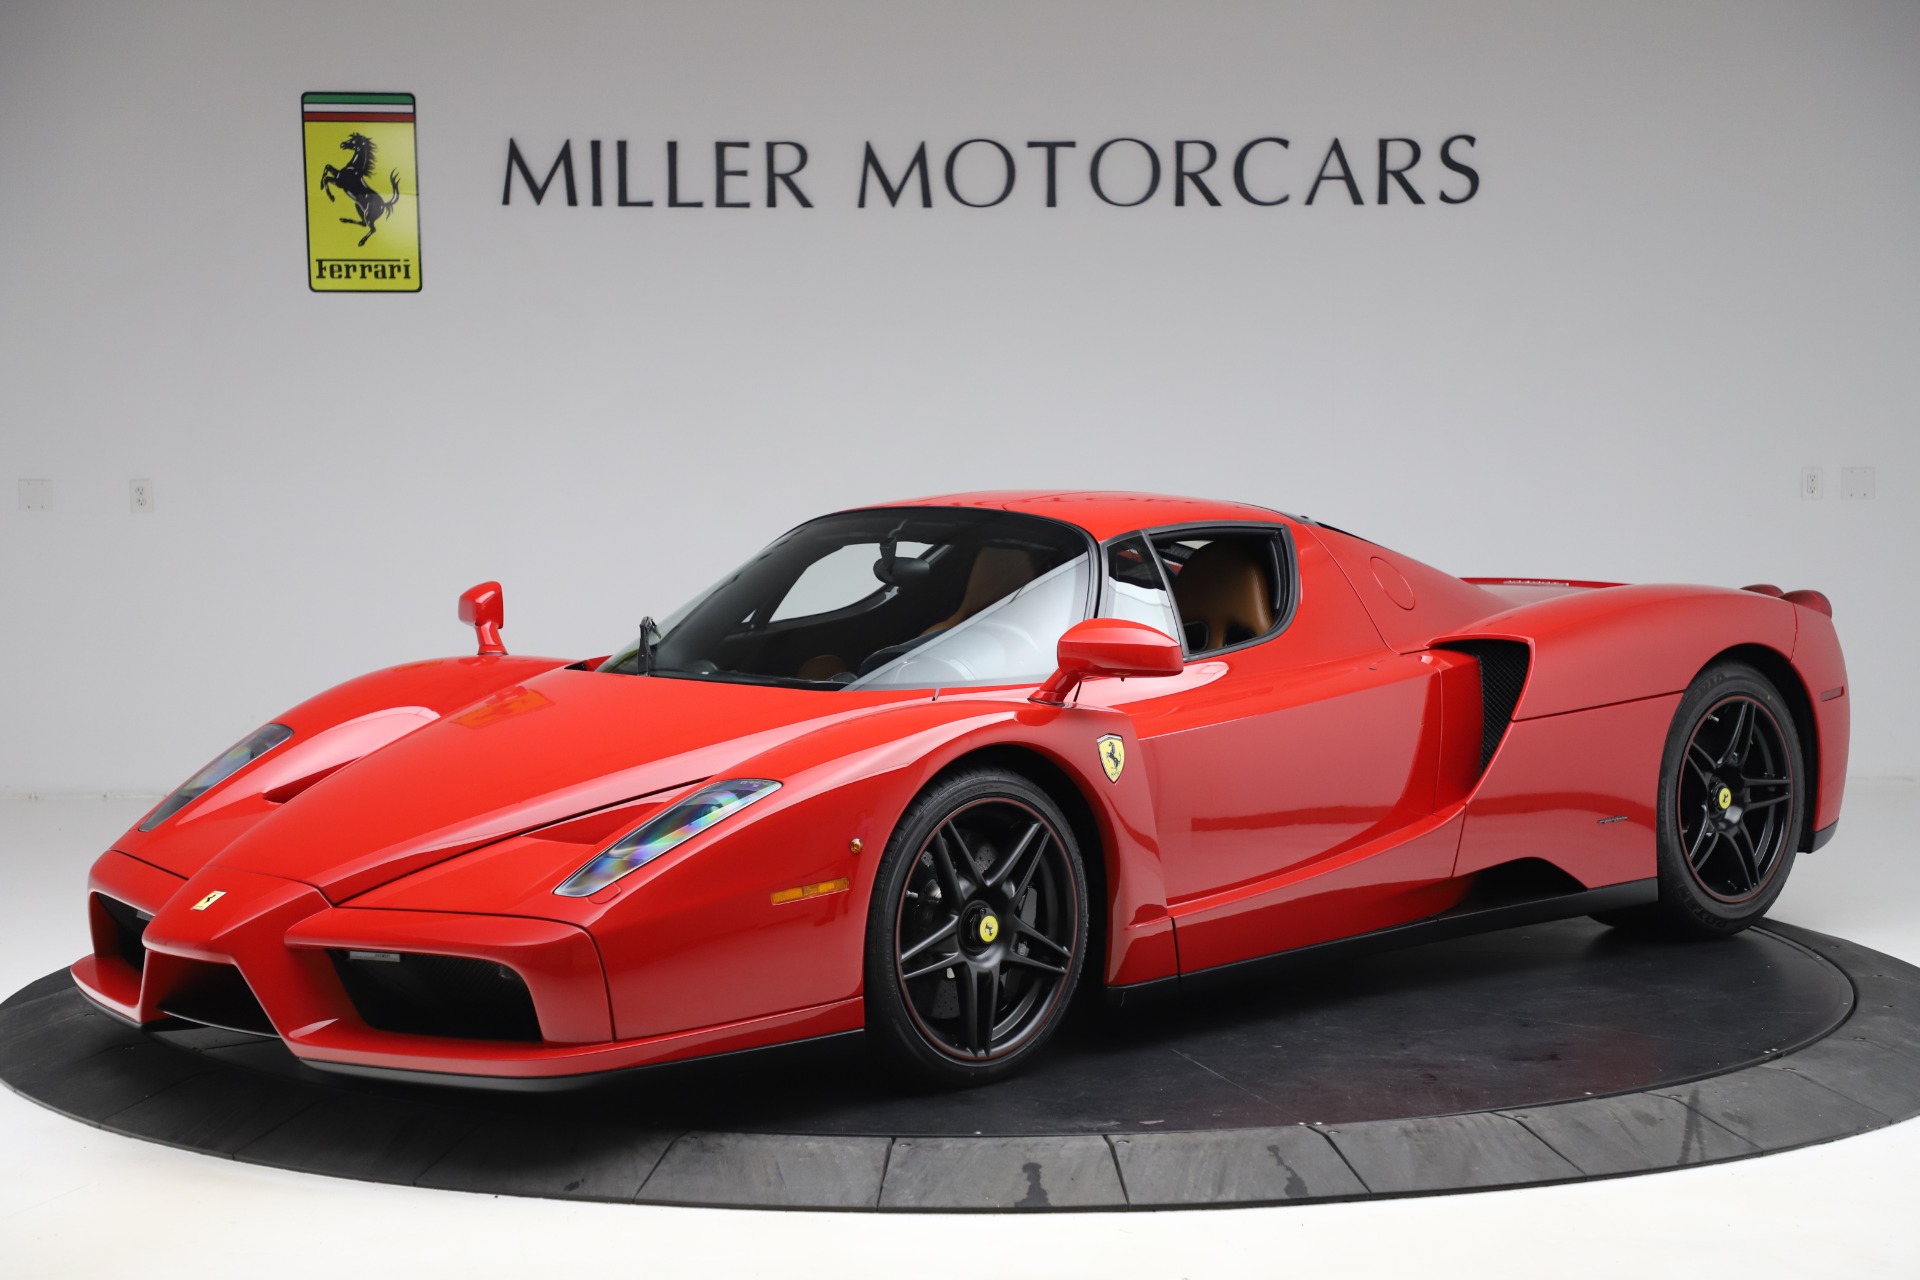 Pre Owned 03 Ferrari Enzo For Sale Miller Motorcars Stock 4658c